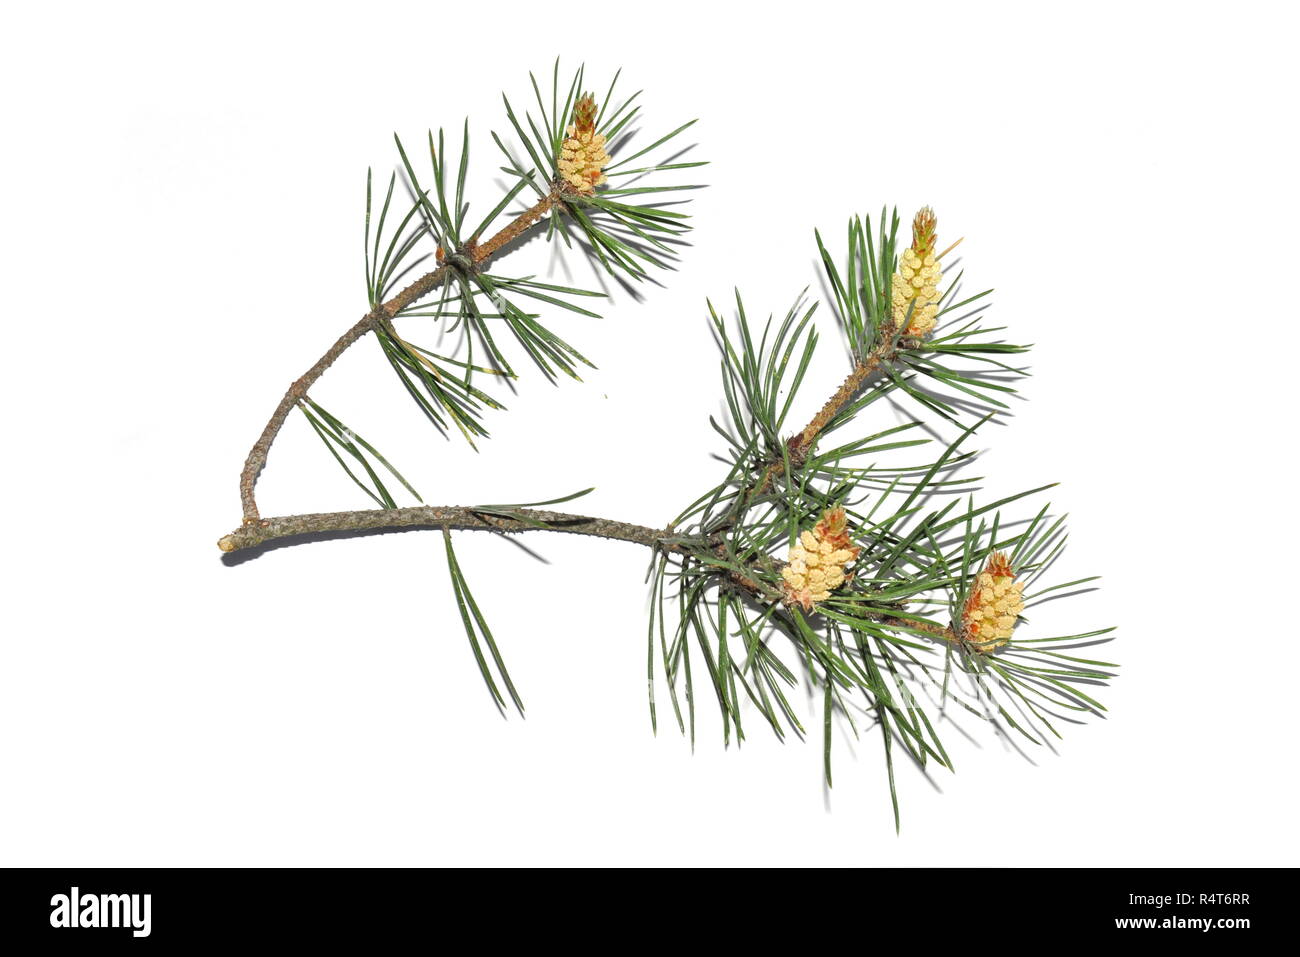 Branch of Pinus sylvestris on white background Stock Photo